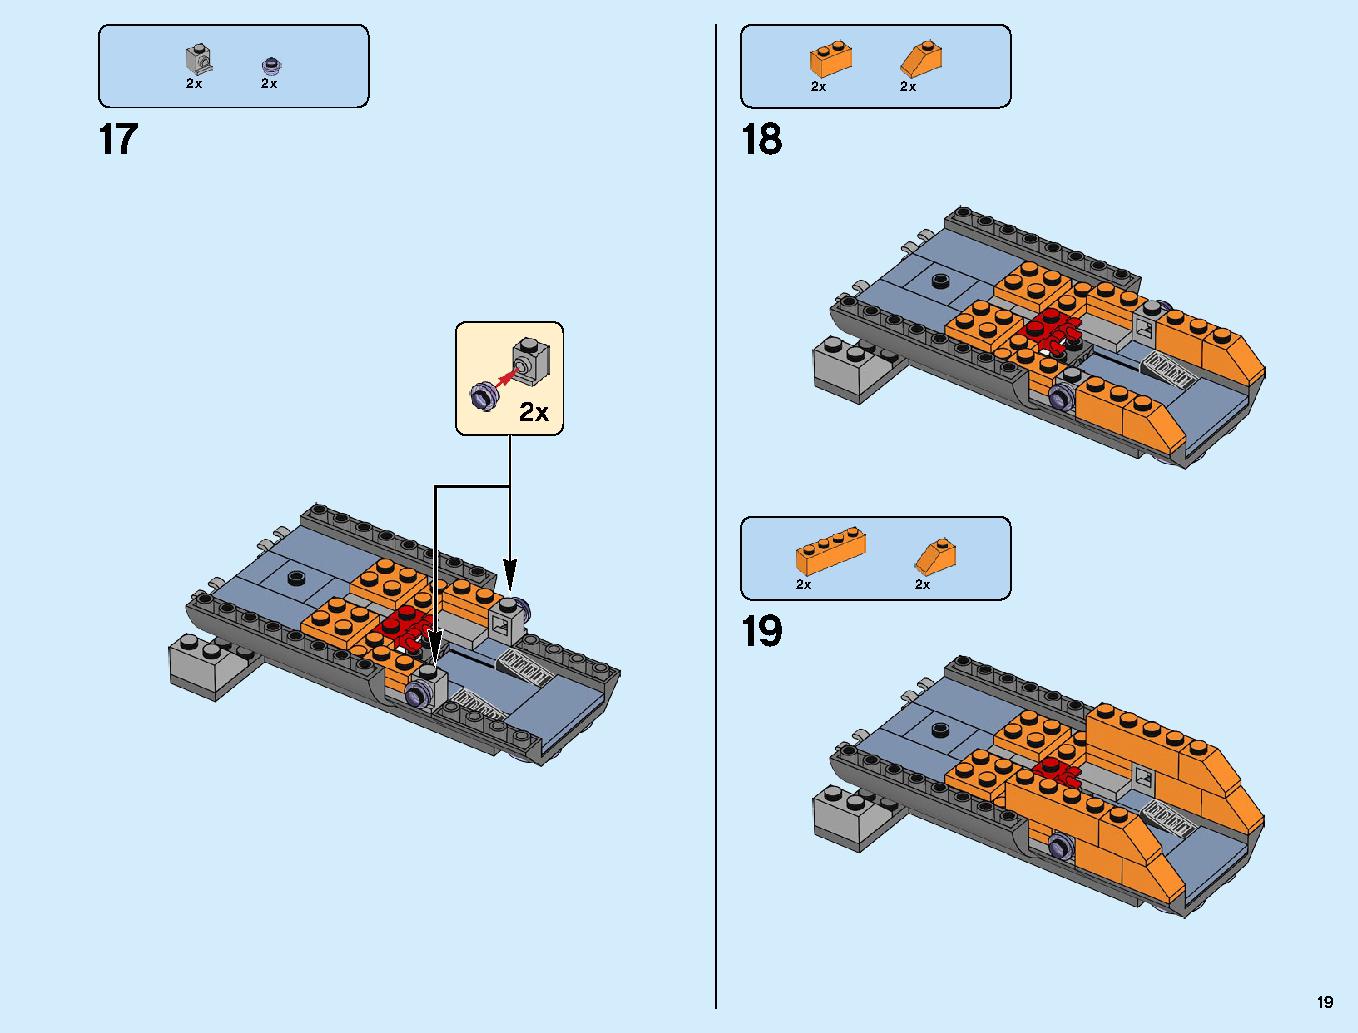 어벤져스 타노스: 최후의 전투 76107 레고 세트 제품정보 레고 조립설명서 19 page